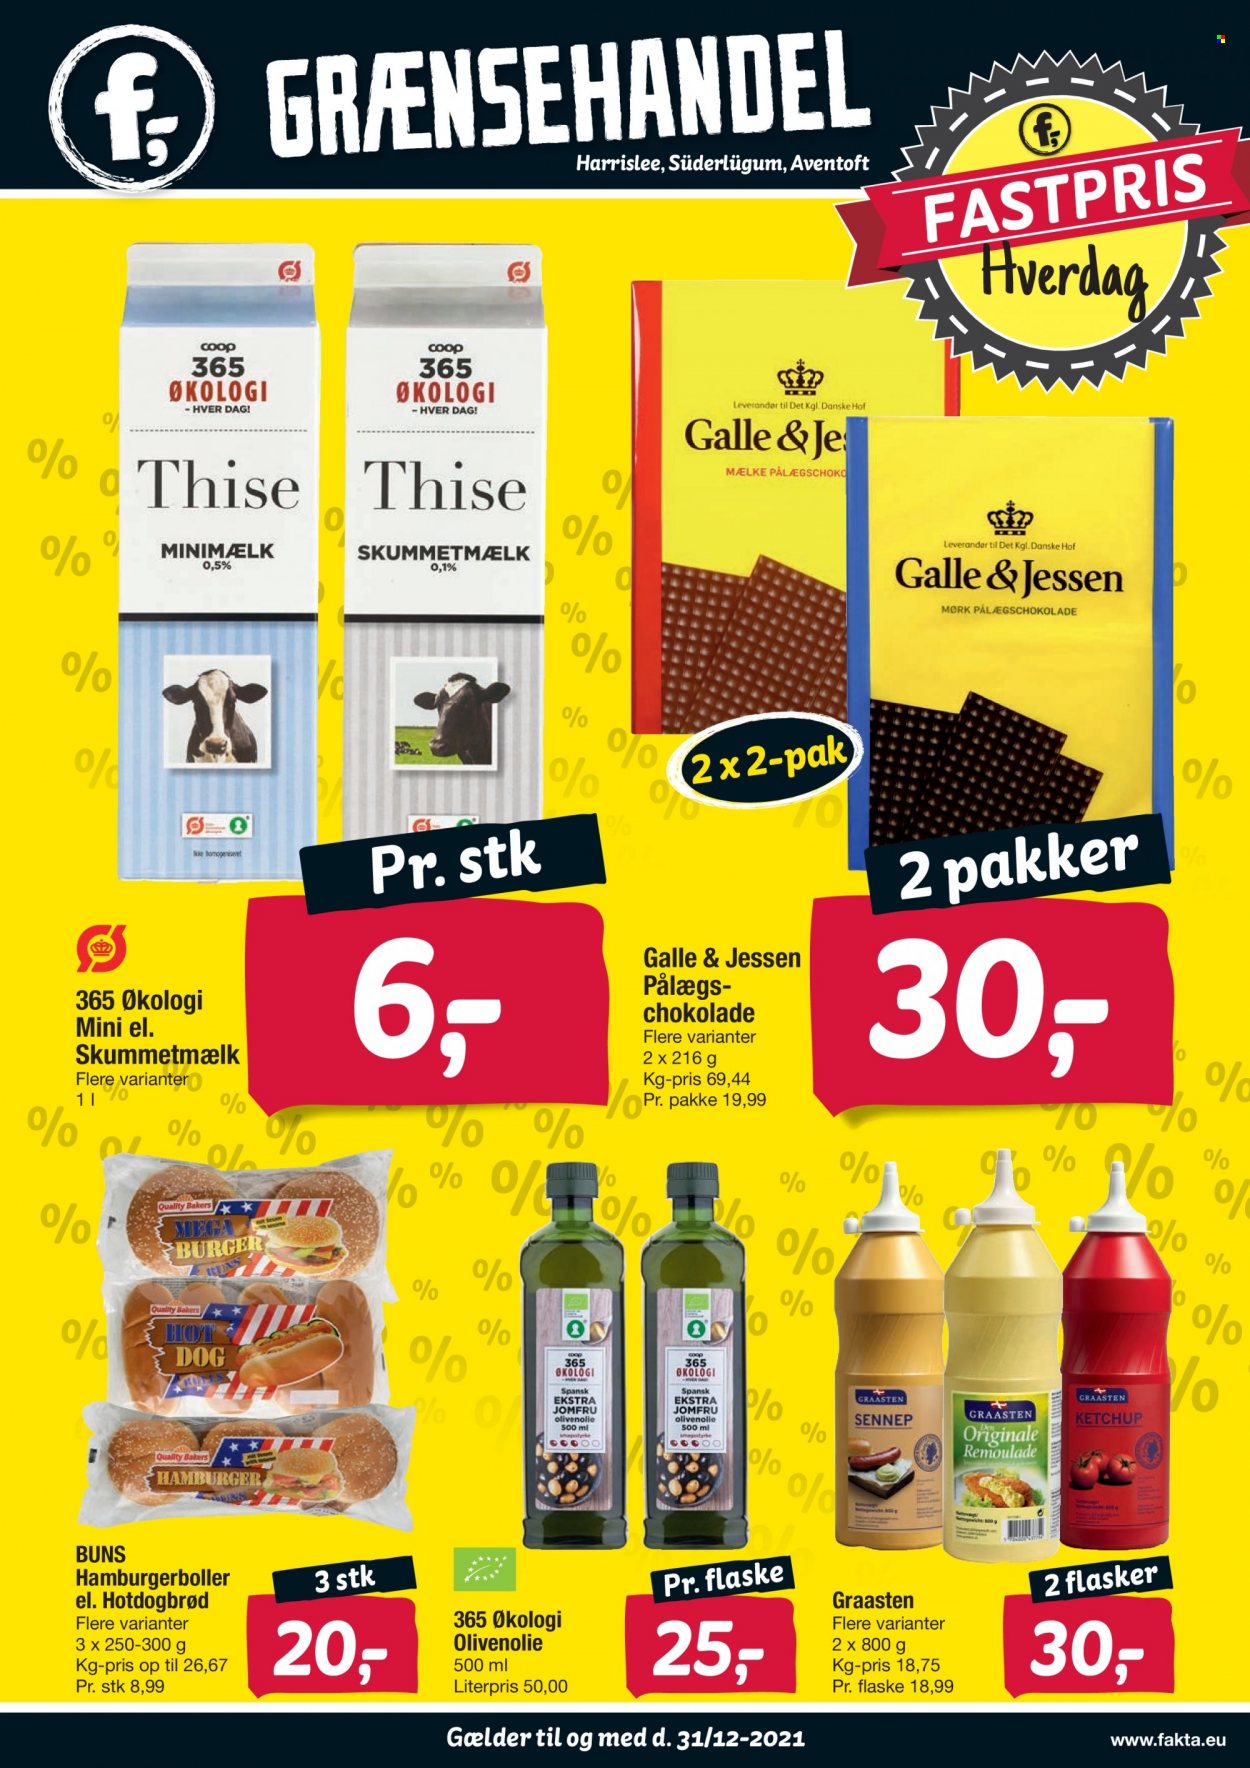 thumbnail - fakta Tyskland tilbud  - 20.10.2021 - 31.12.2021 - tilbudsprodukter - mælk, remoulade, chokolade, pålægschokolade, ketchup, sennep, olivenolie. Side 1.